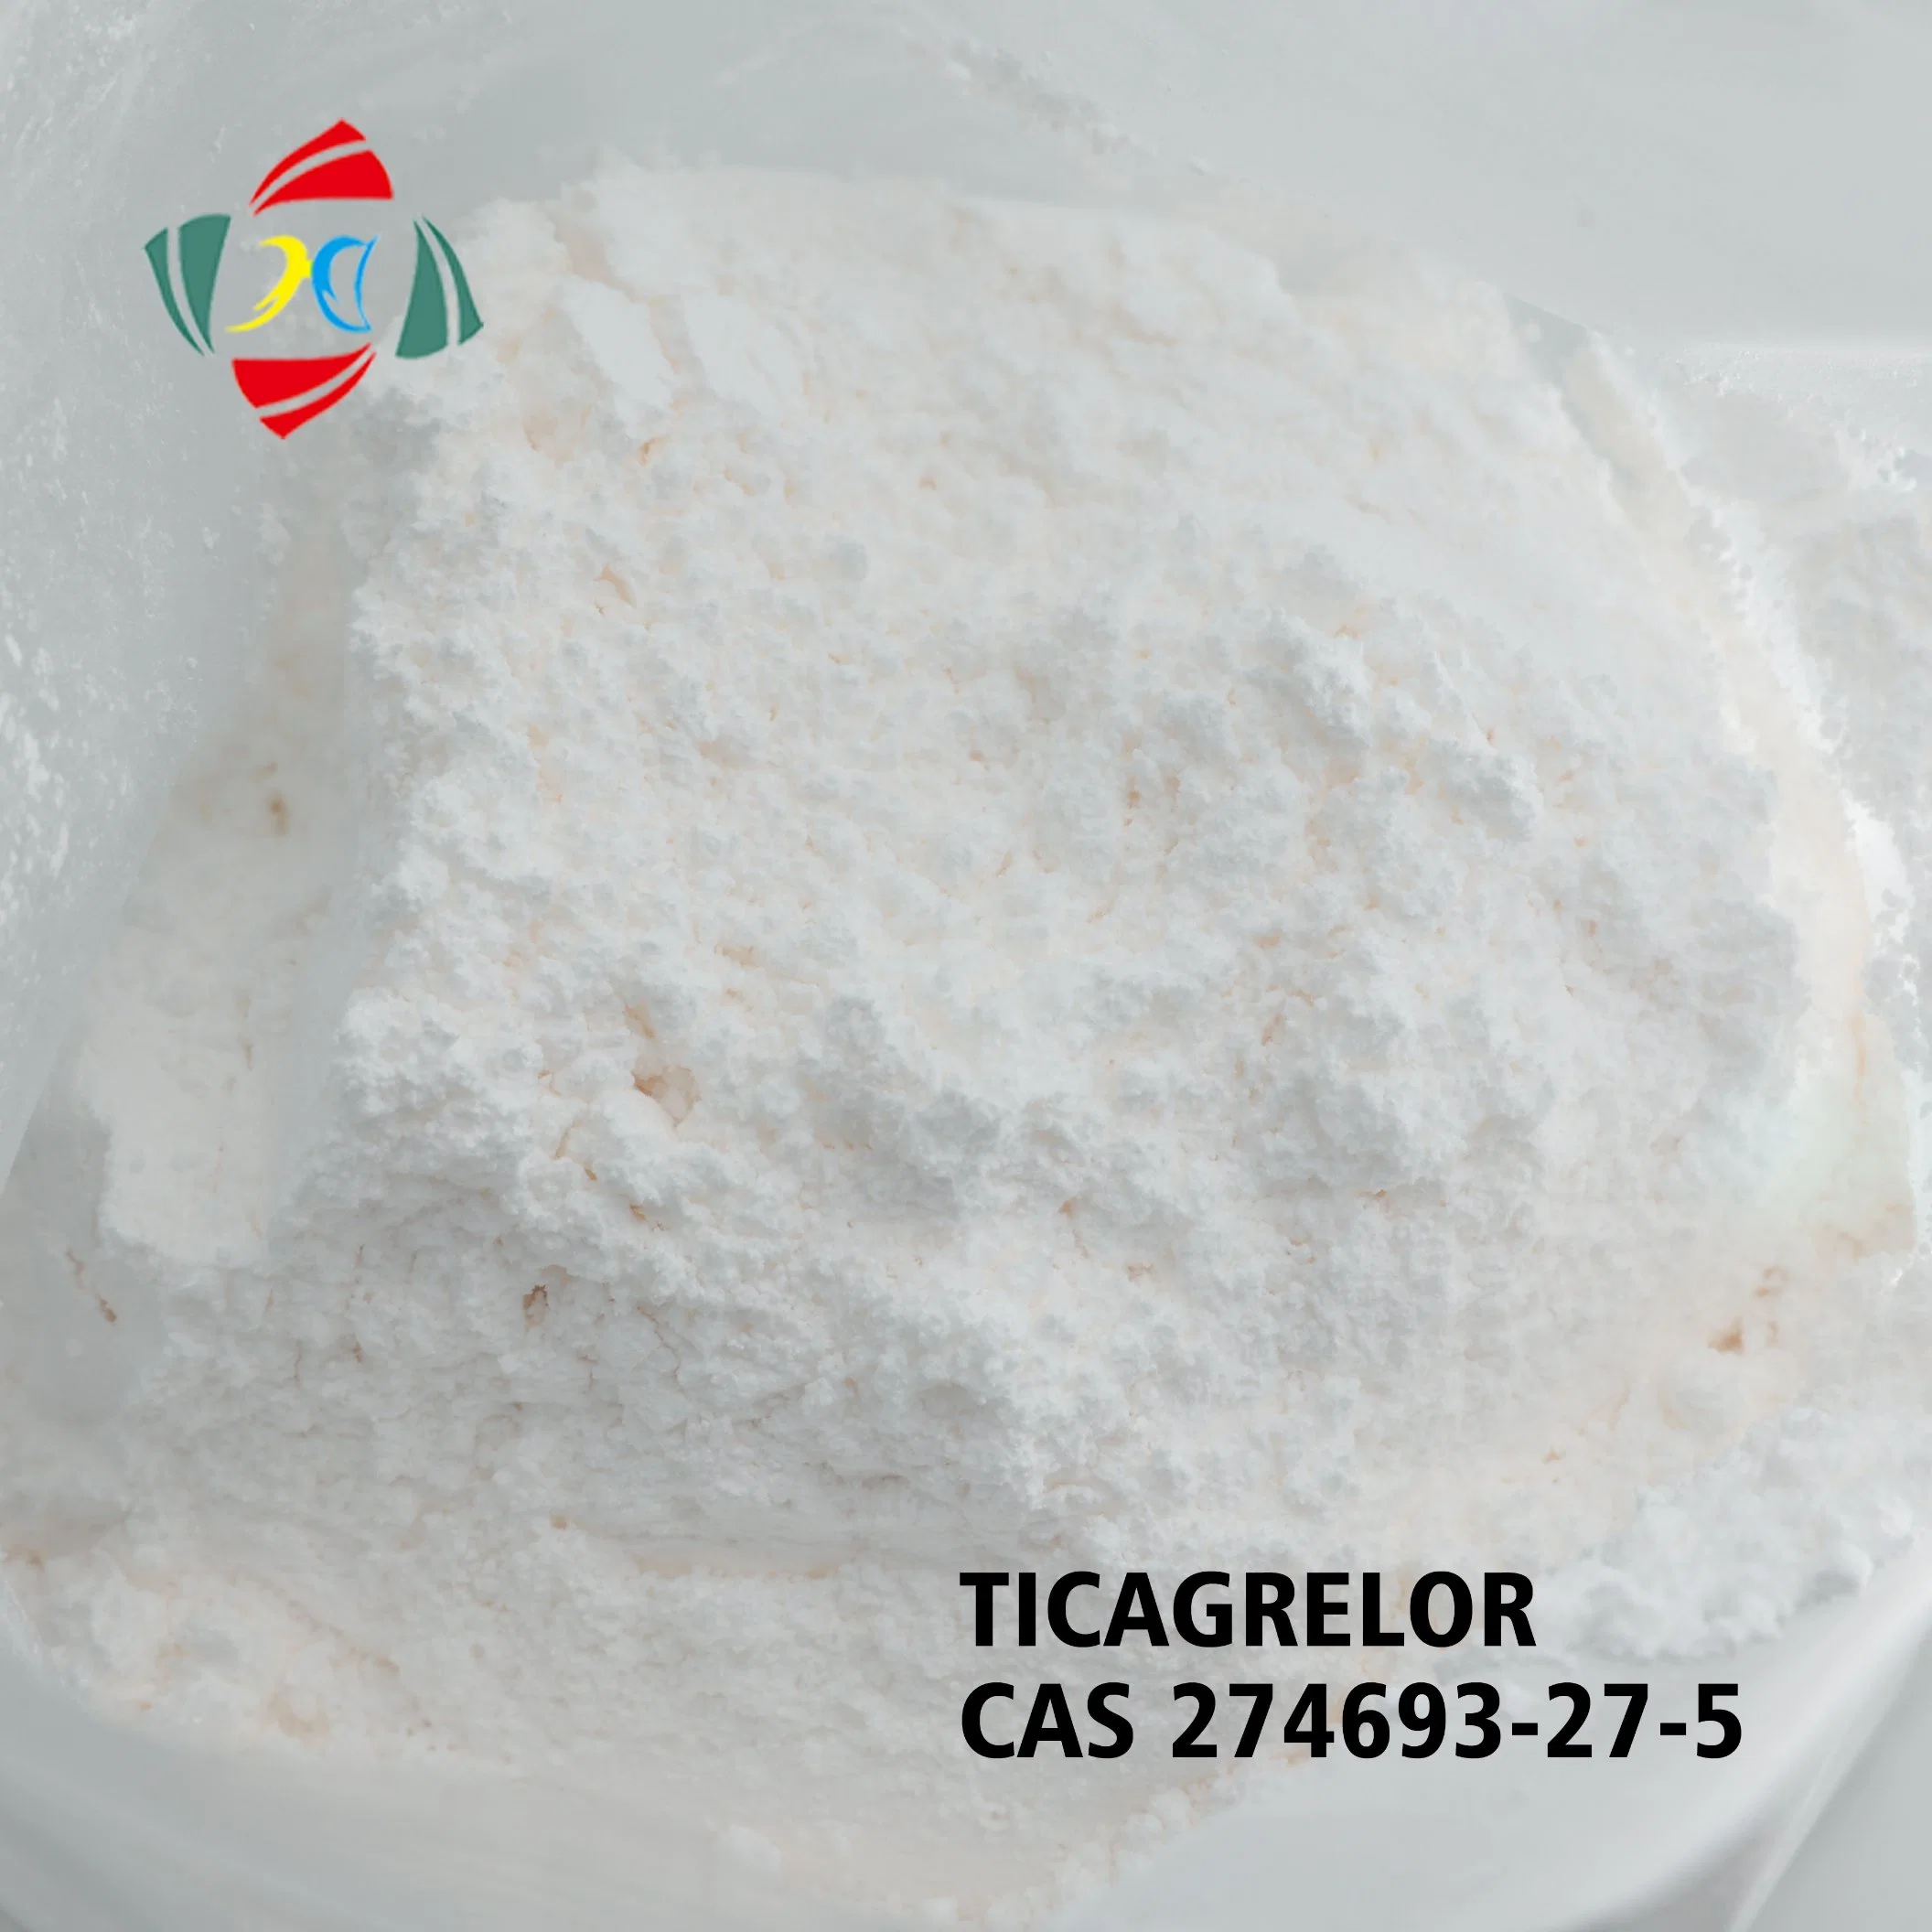 Ticagrelor Forma II intermedios Ticagrelor Ticagrelor Cardiovascular anticoagulante CAS 274693-27-5